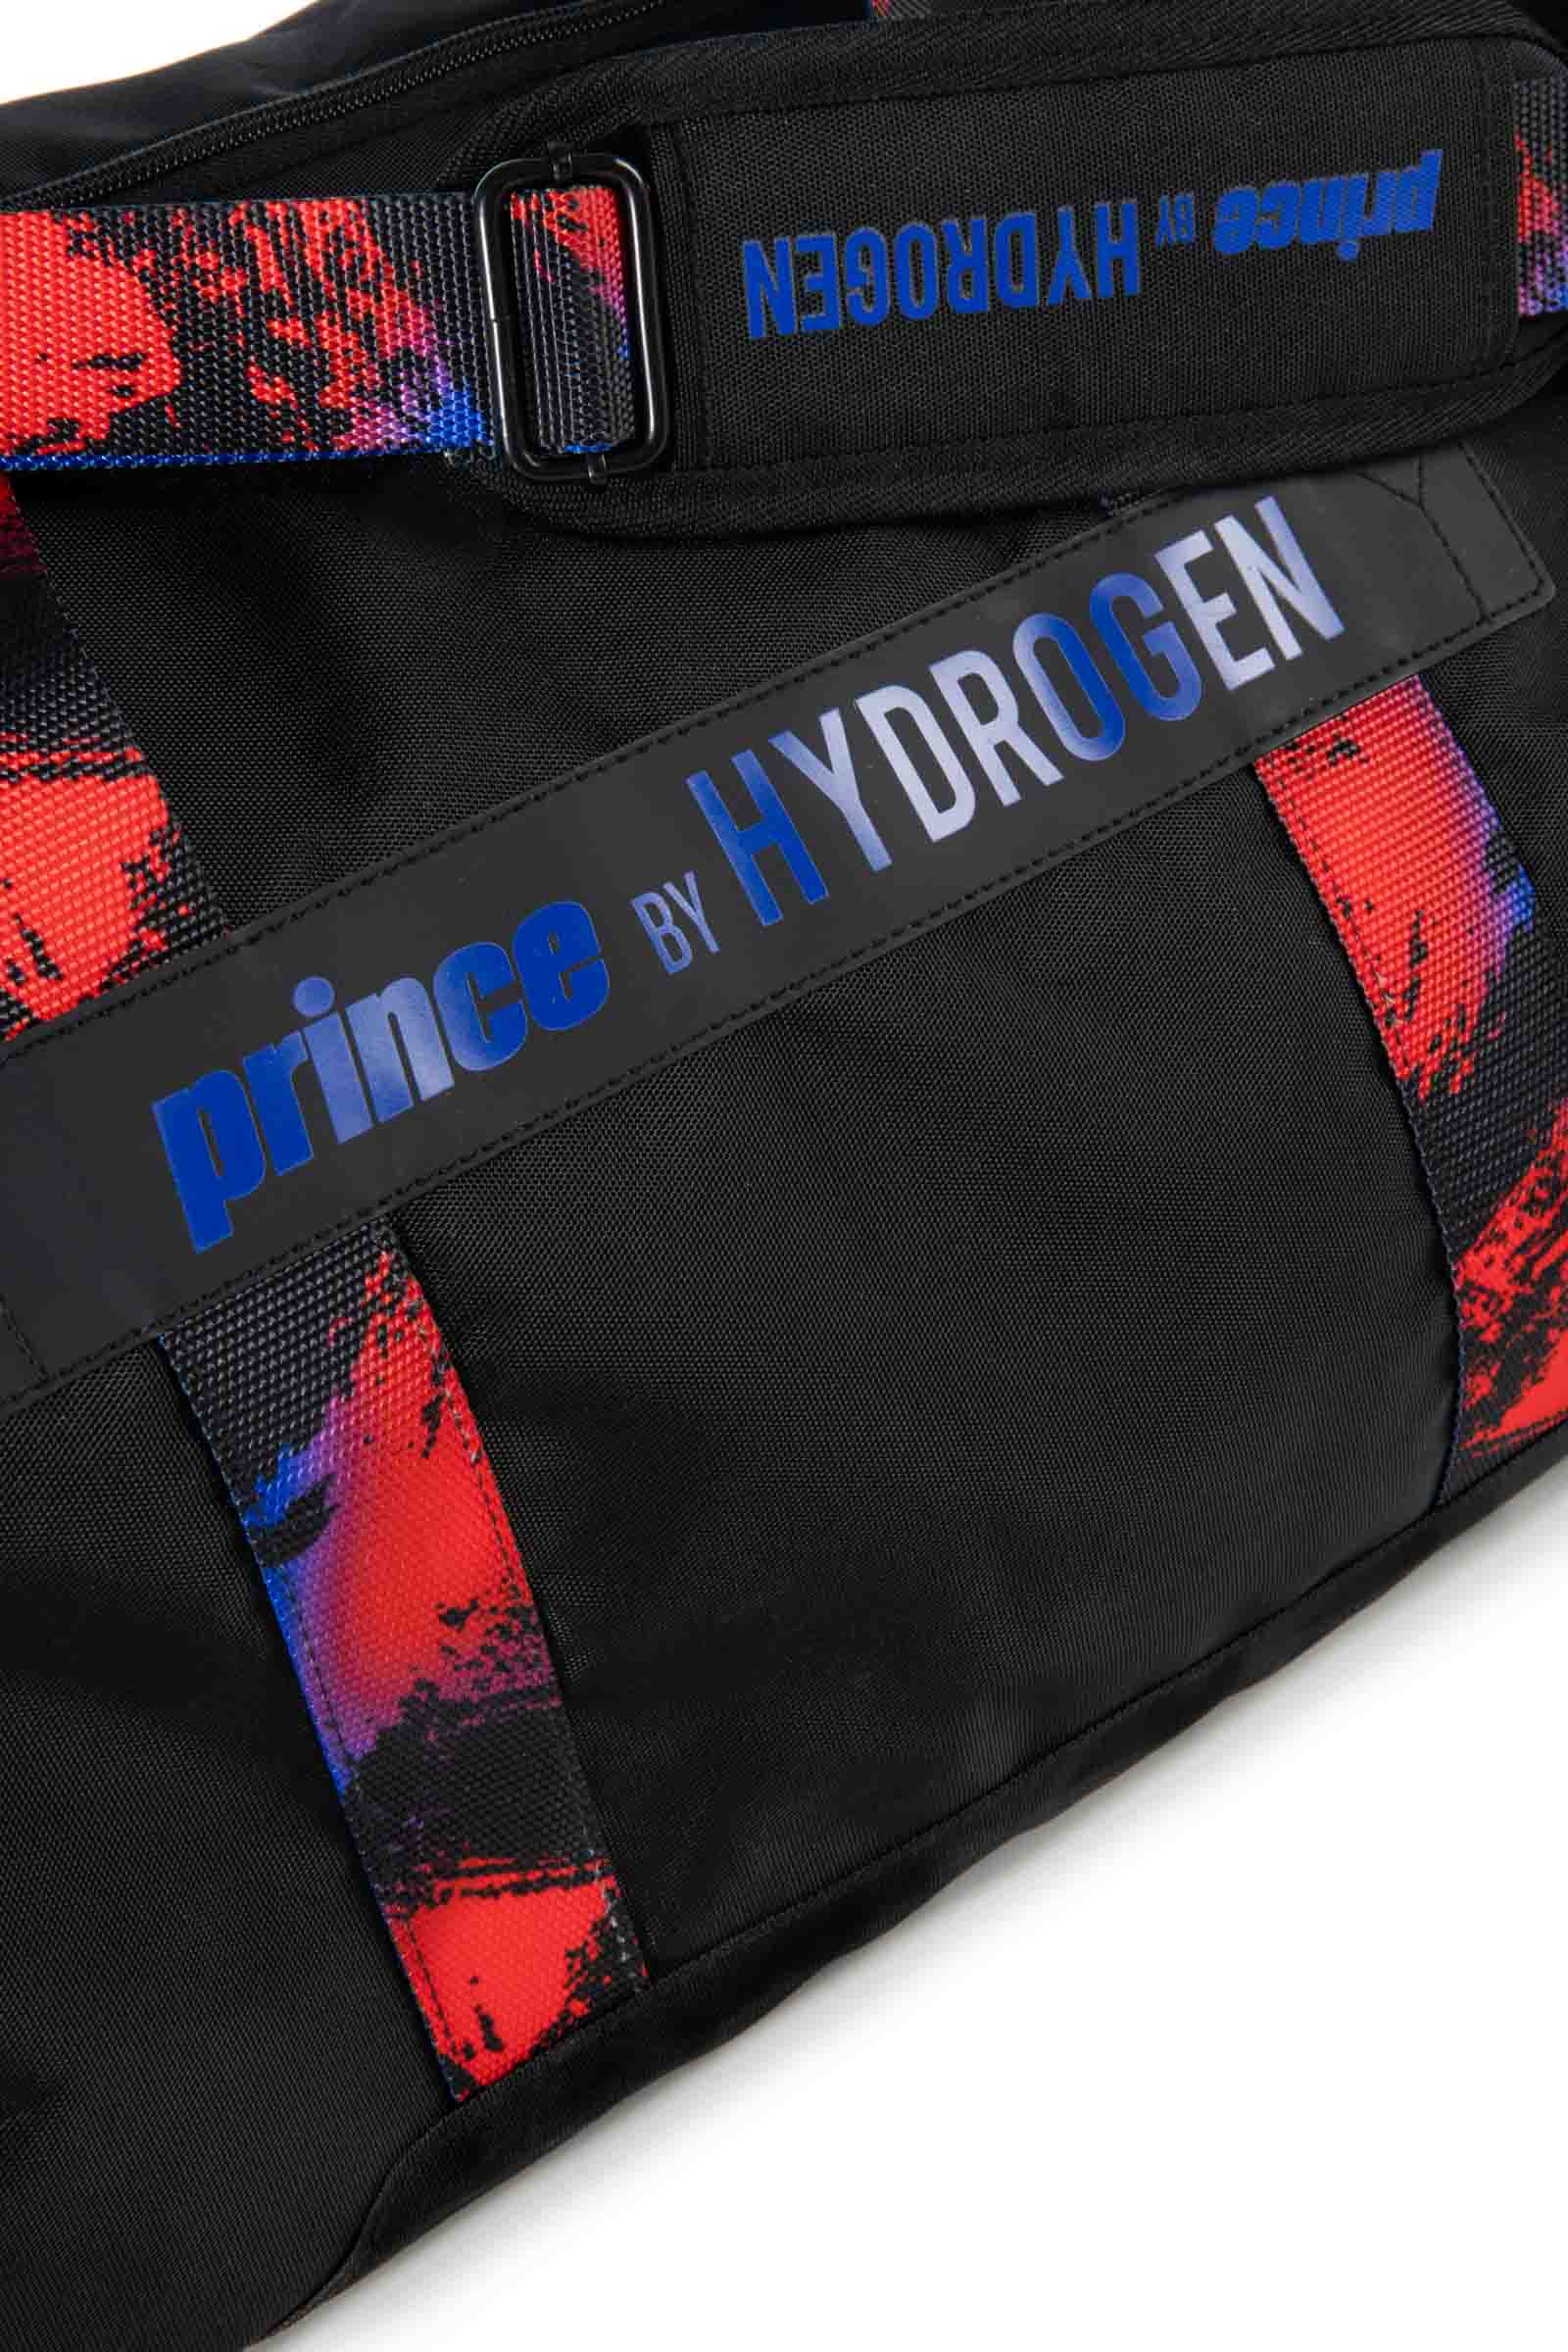 RANDOM BAG PRINCE BY HYDROGEN - BLACK,RED,BLUE - Hydrogen - Luxury Sportwear